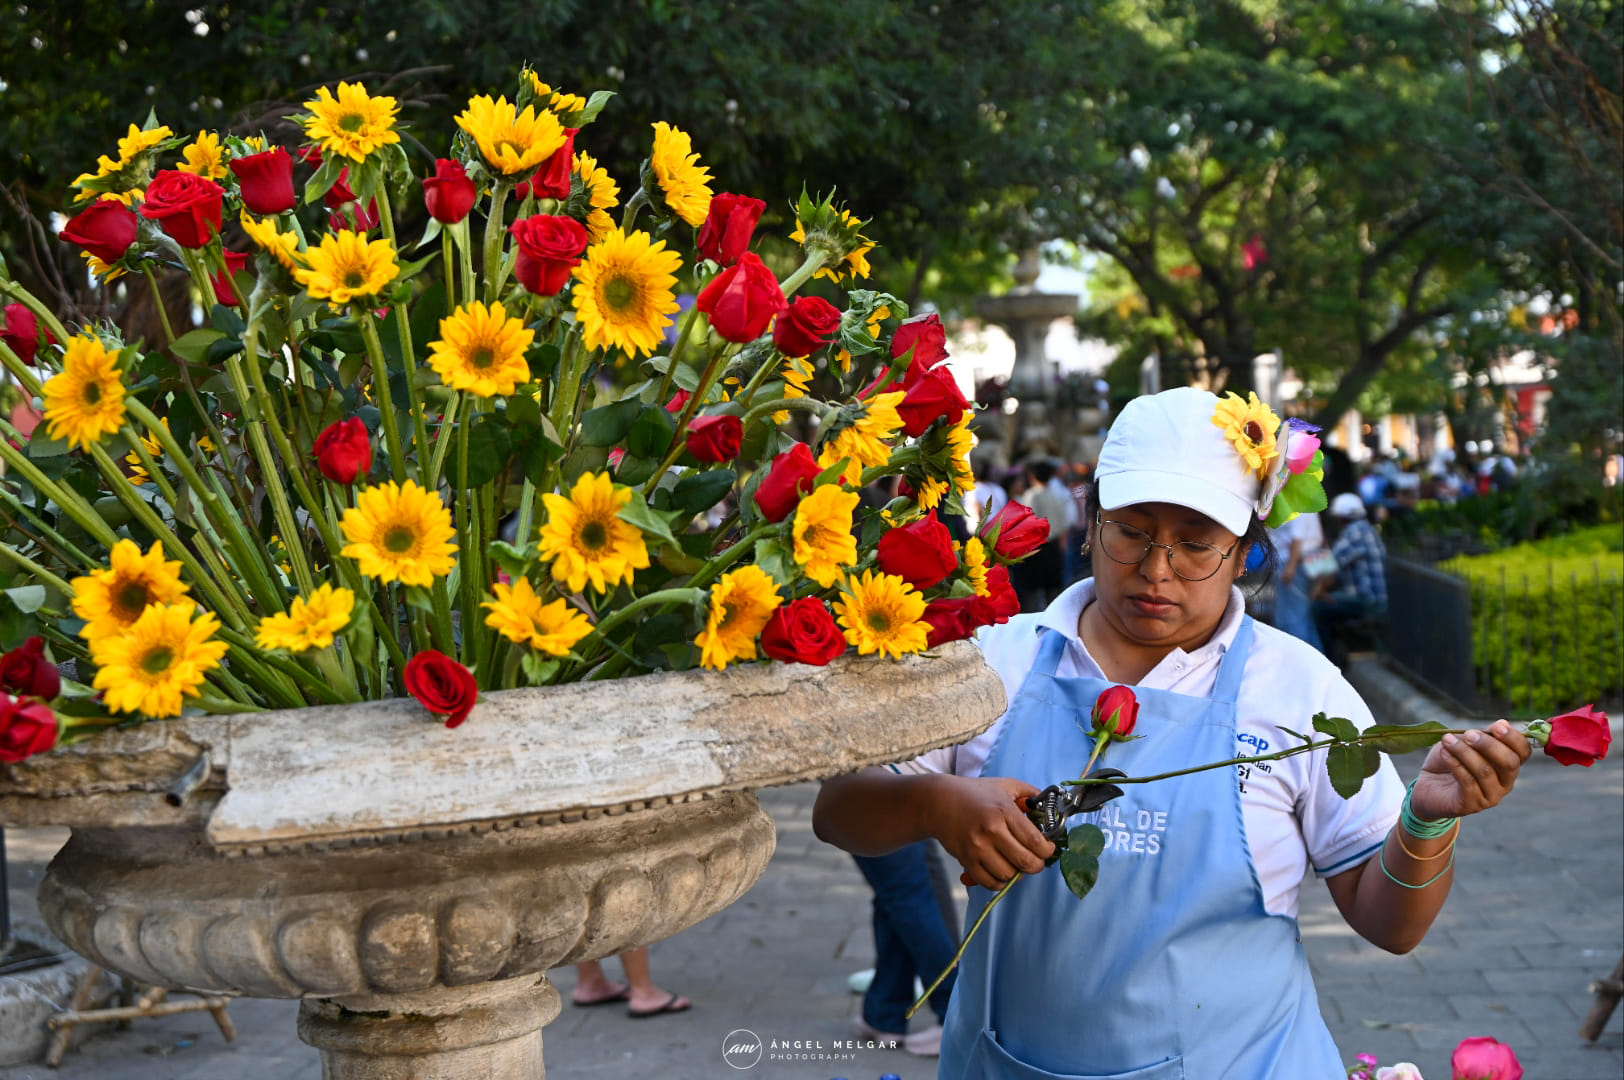 Las actividades del Festival de Las Flores en La Antigua Guatemala iniciaron desde el 28 de octubre pasado, con concursos, exposiciones, talleres, entre otras.